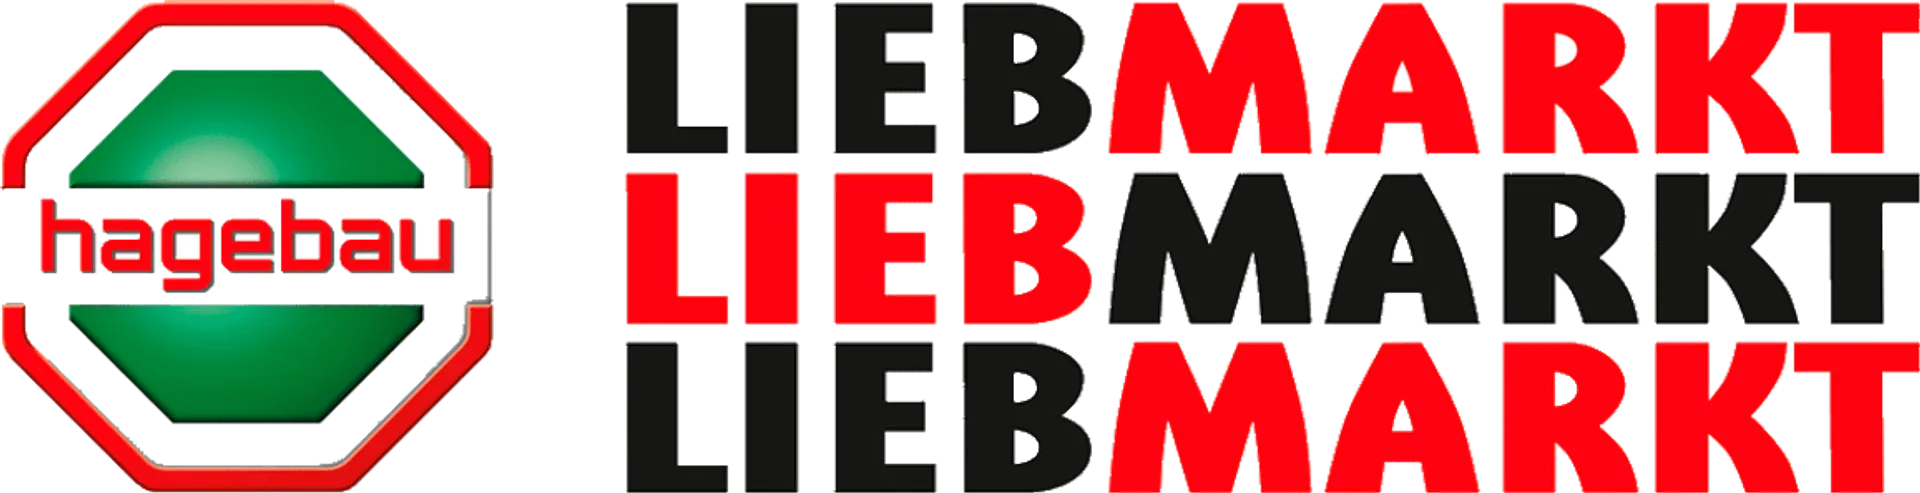 LIEBMARKT logo